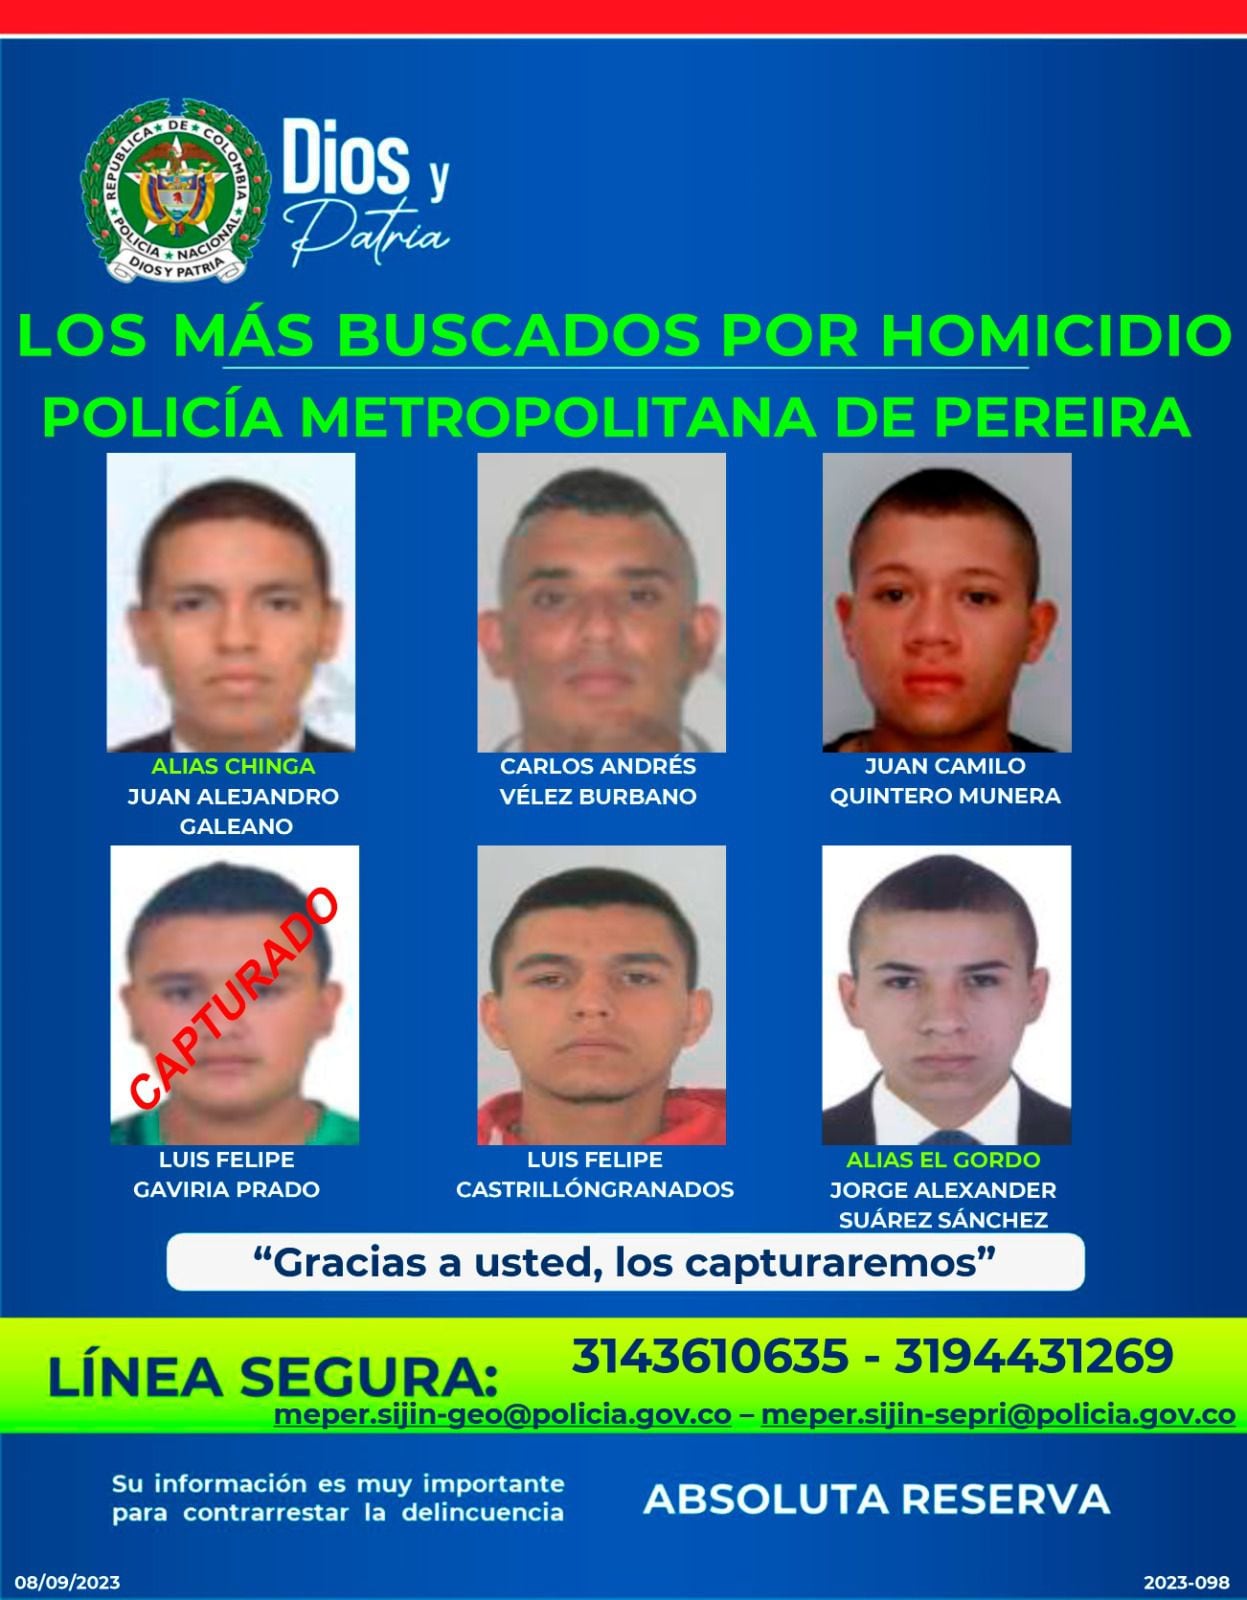 Los más buscados por la Policía en Pereira